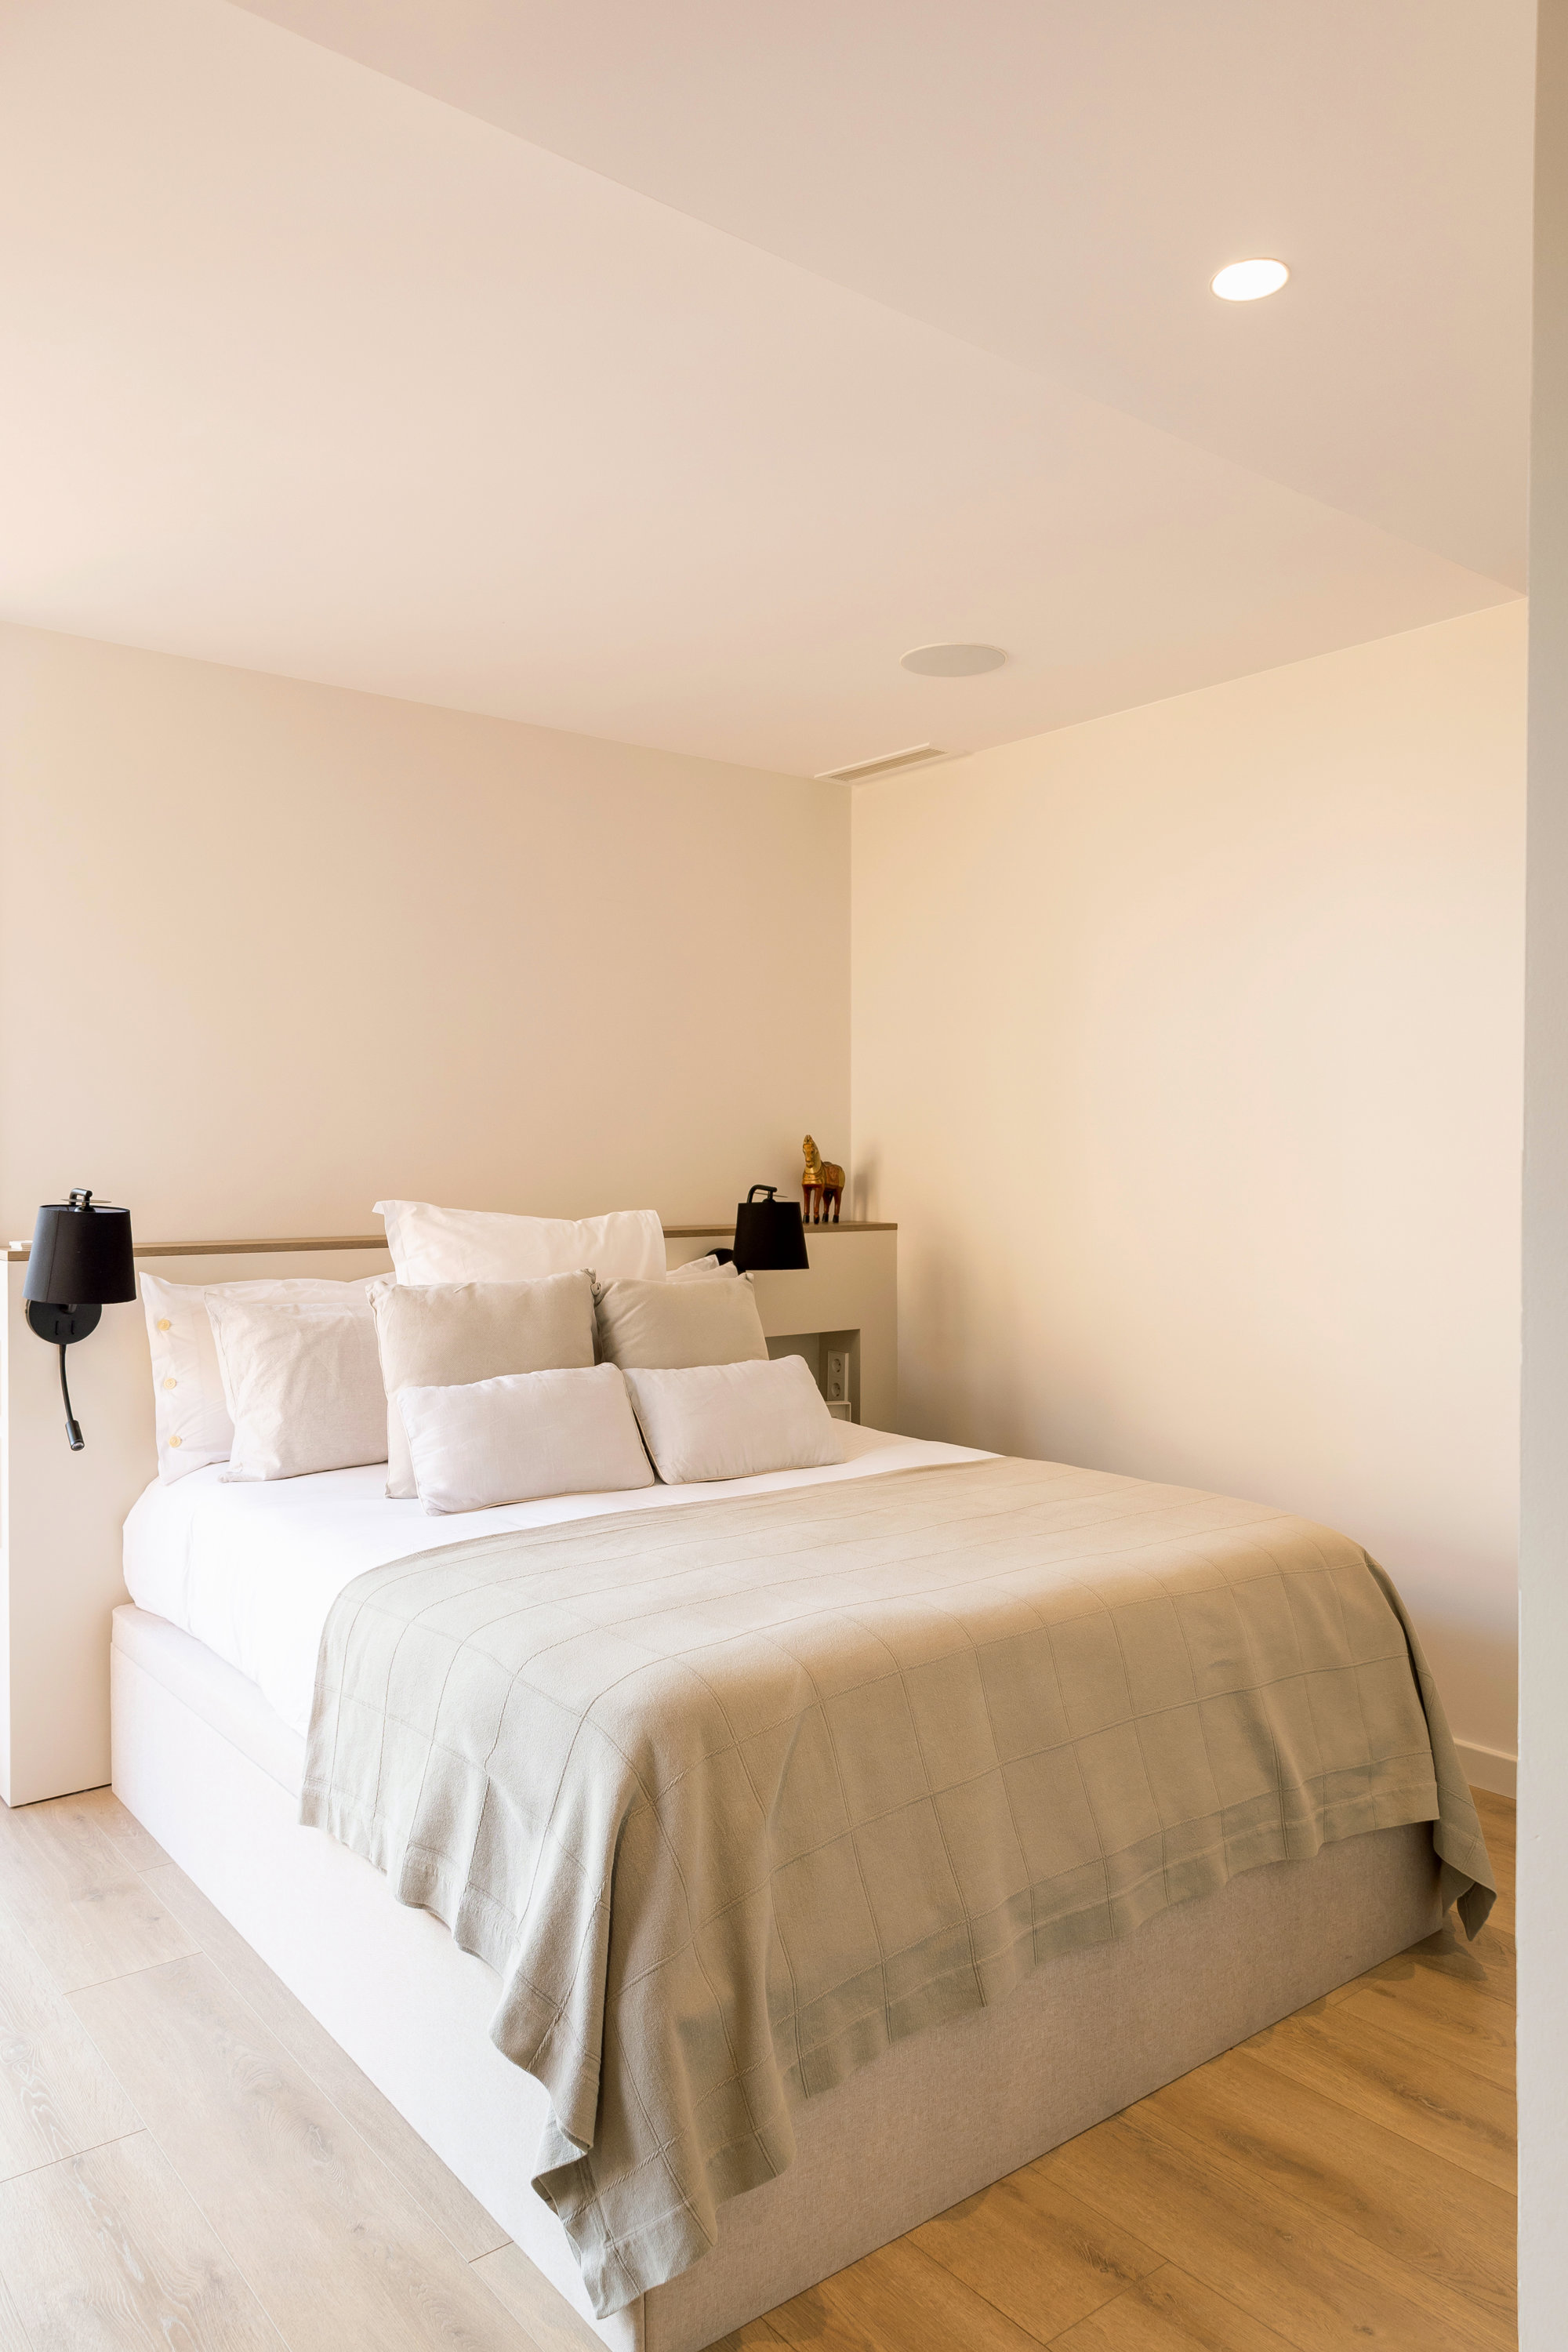 Dormitorio con textiles blancos y mesillas a medida